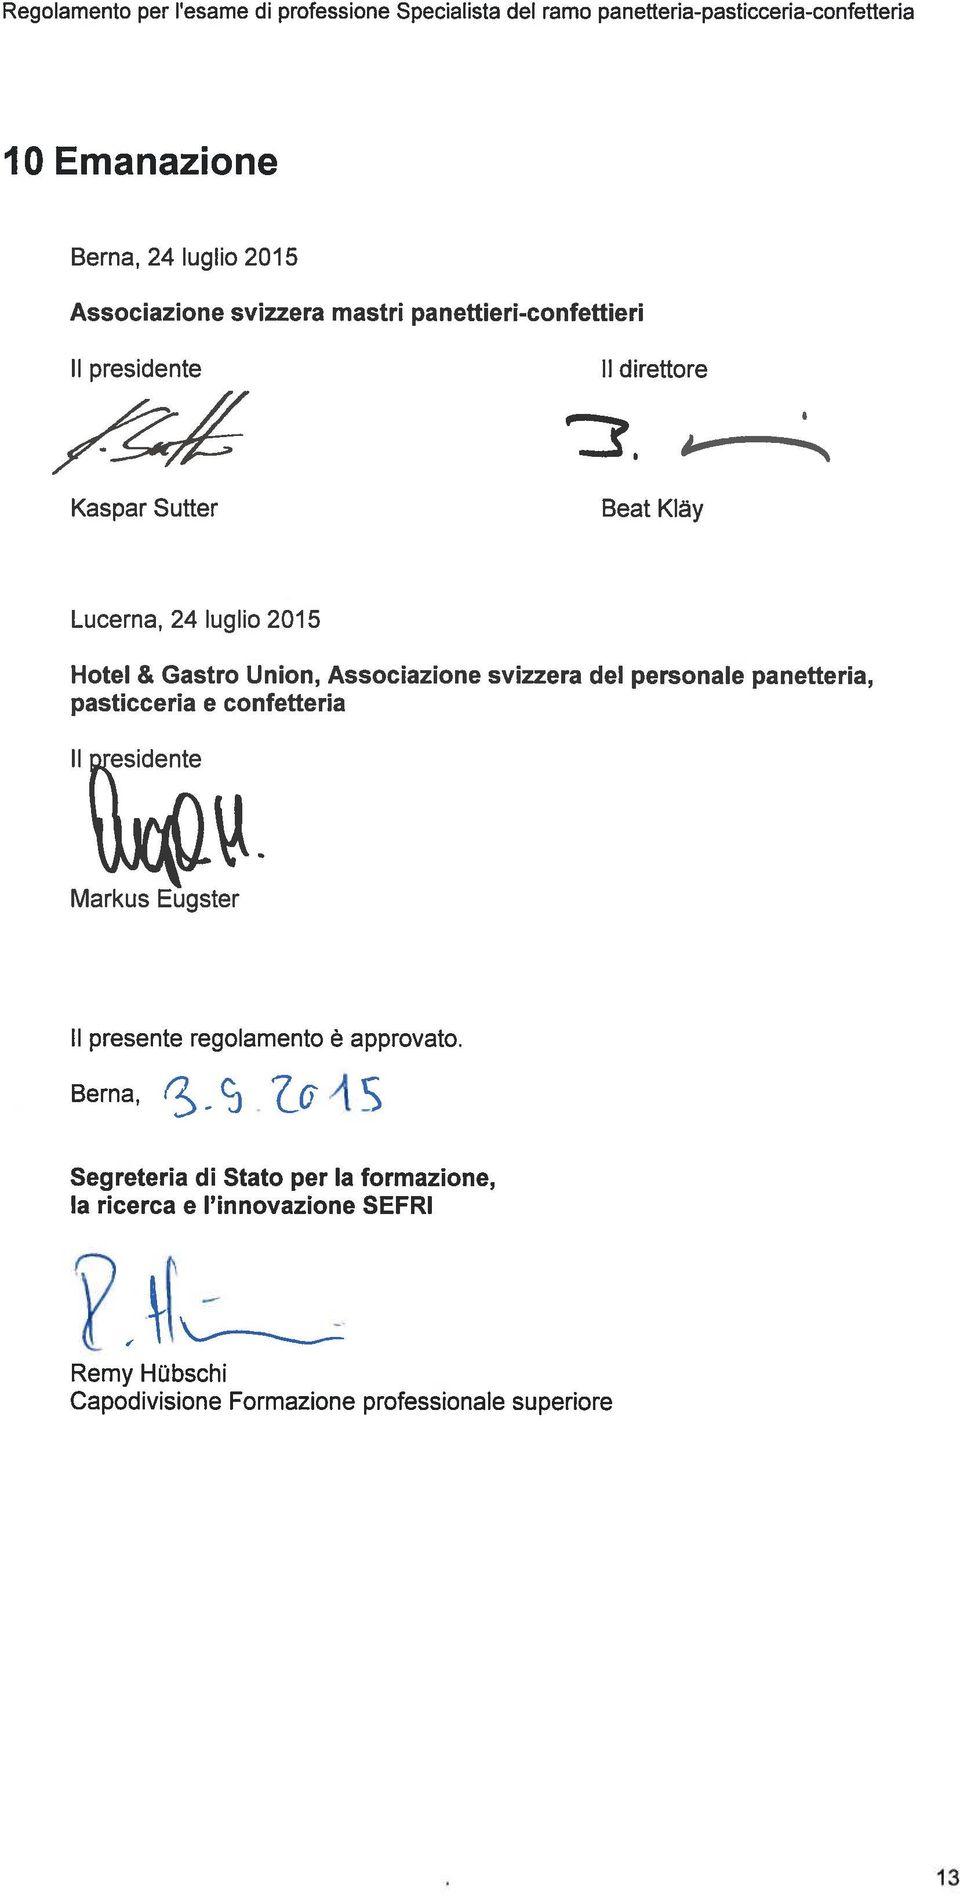 Union, Associazione svizzera del personale panetterla, pasticceria e confetterla II residente Markus Eugster II presente regolamento